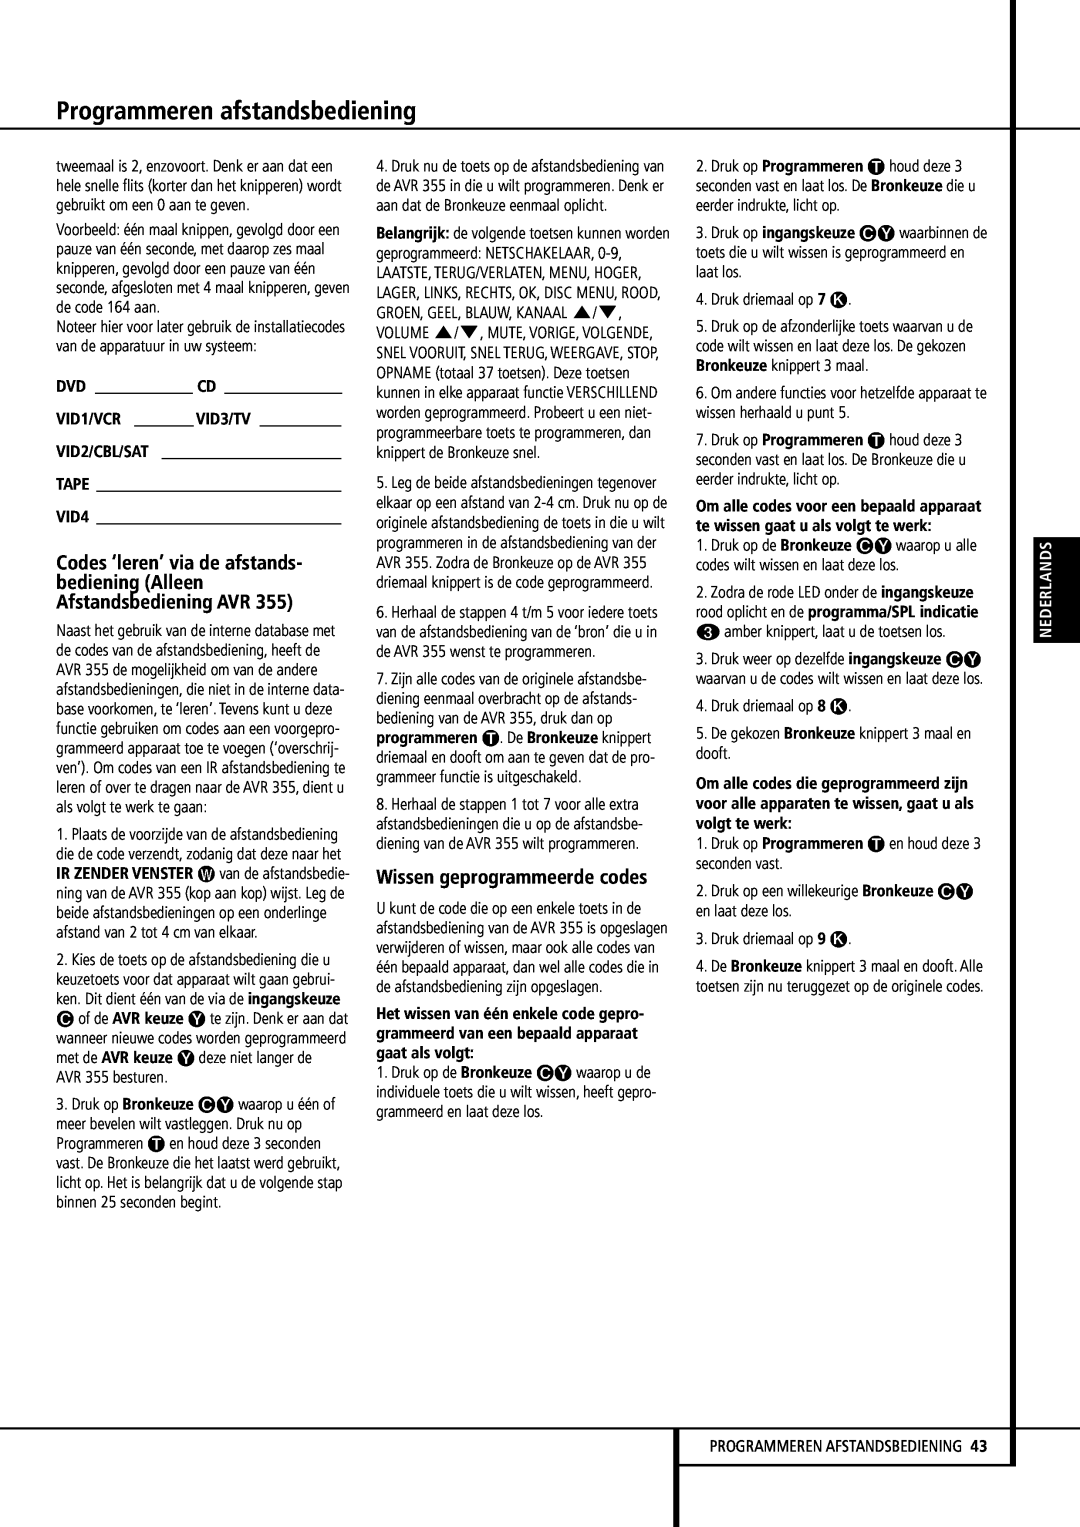 Harman-Kardon 355, 255 manual Wissen geprogrammeerde codes, Programmeren afstandsbediening, Nederlands 